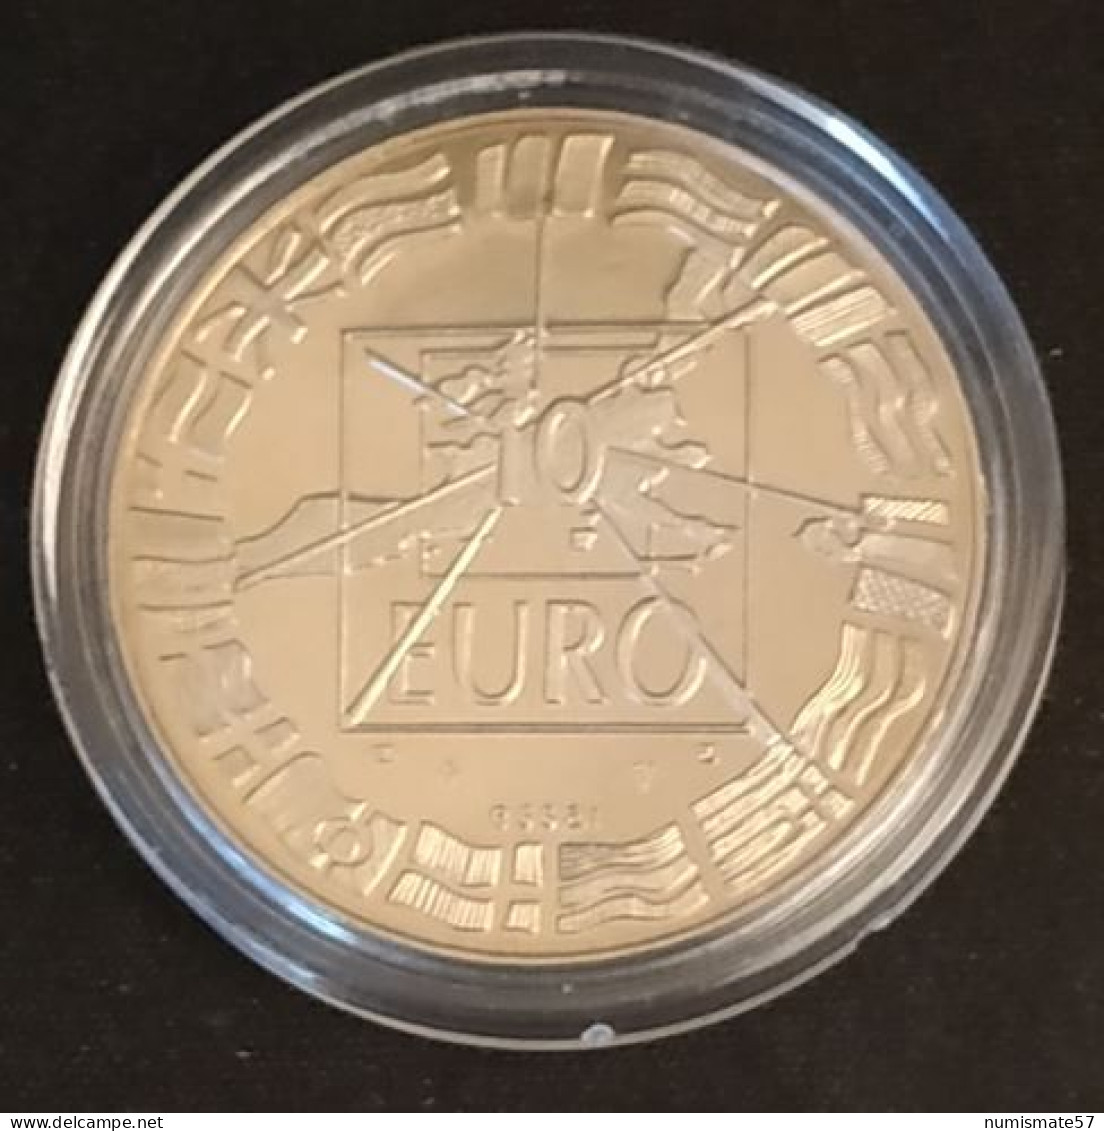 ESSAI - 10 Euros Essai 1998 - Bronze Florentin - Essays & Proofs